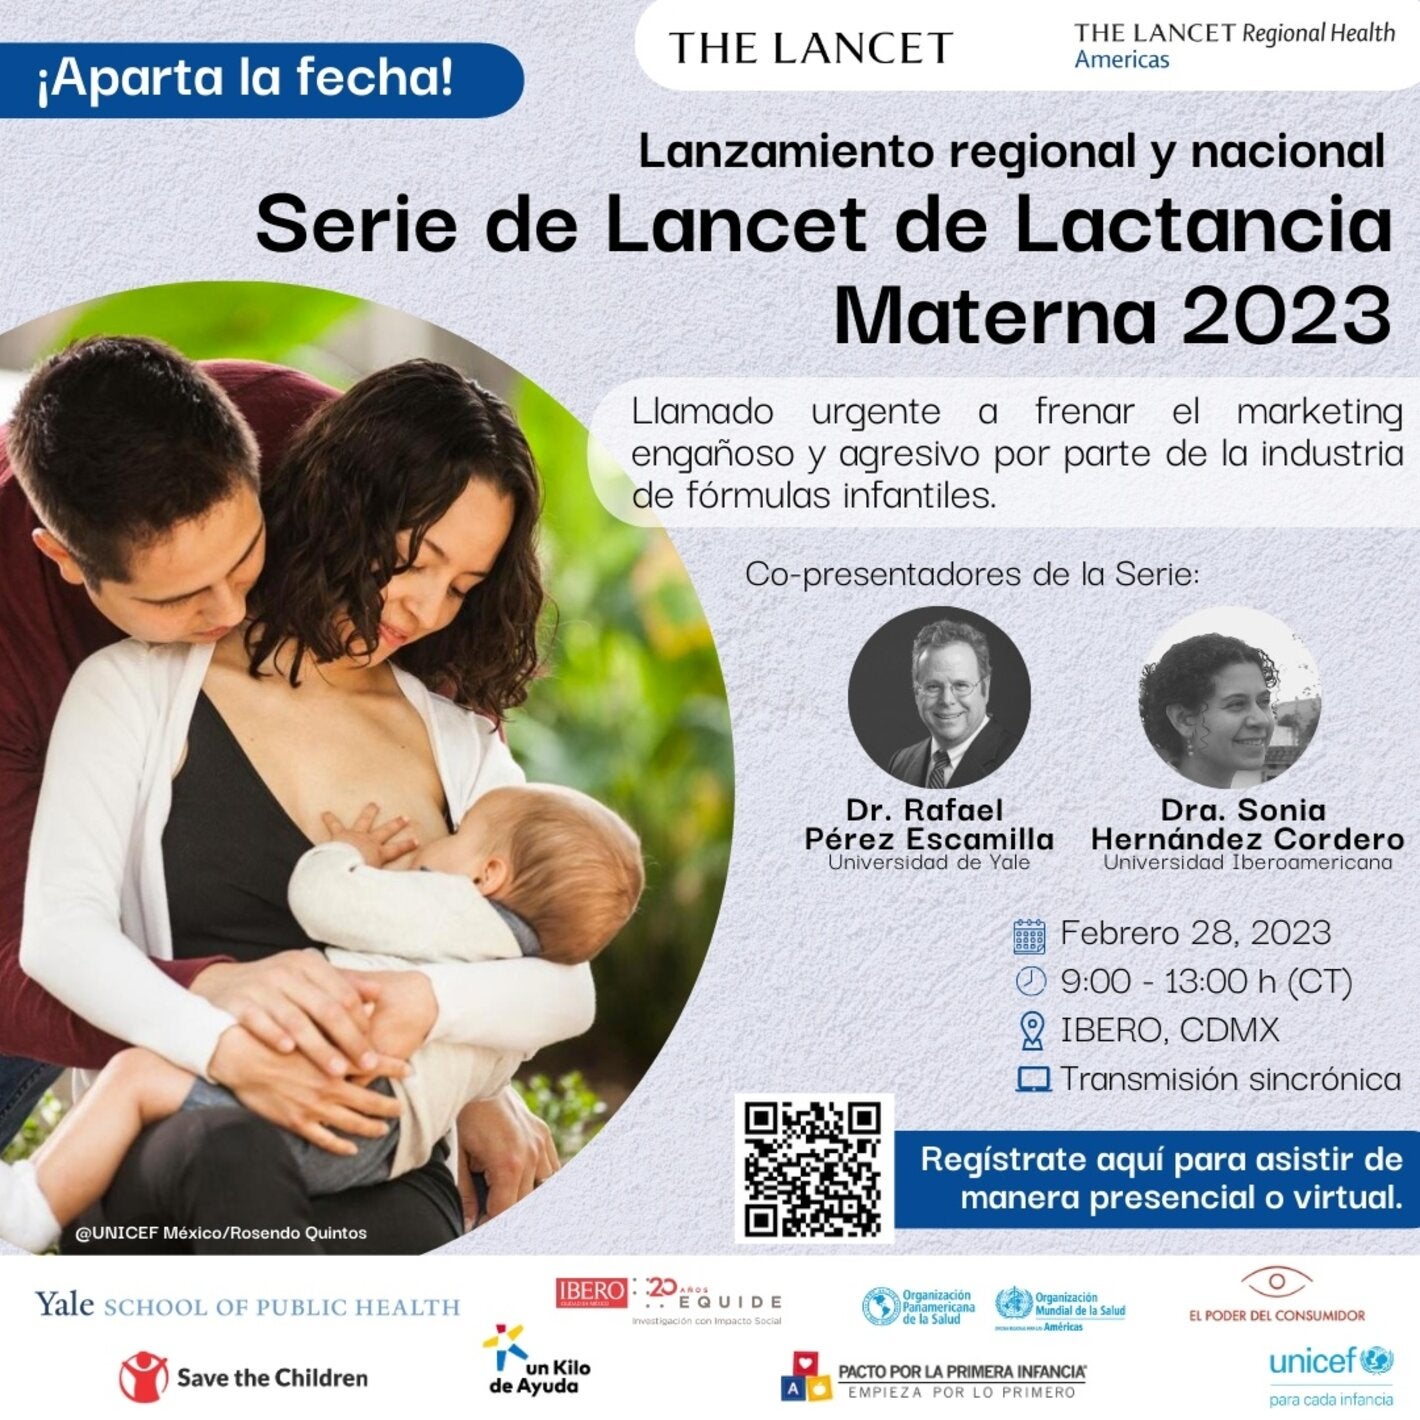 Lanzamiento Regional y Nacional de la Serie Lancet de Lactancia Materna, 2023